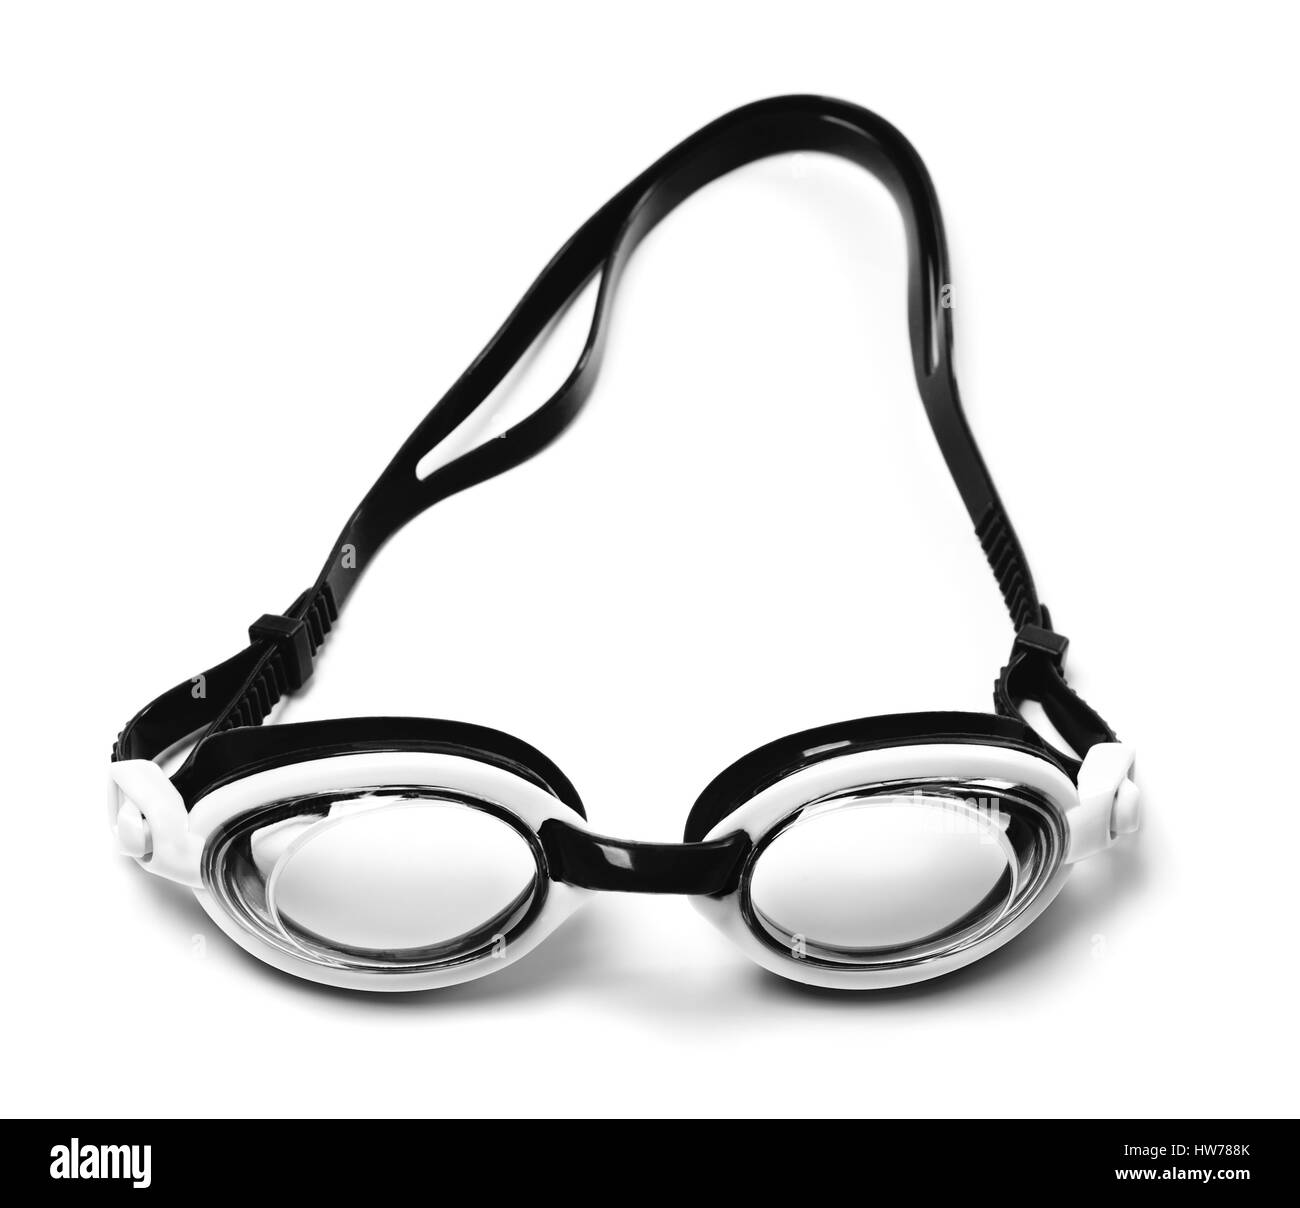 Schwarz / weiß-Schutzbrillen für Schwimmen isolierten auf weißen Hintergrund Stockfoto